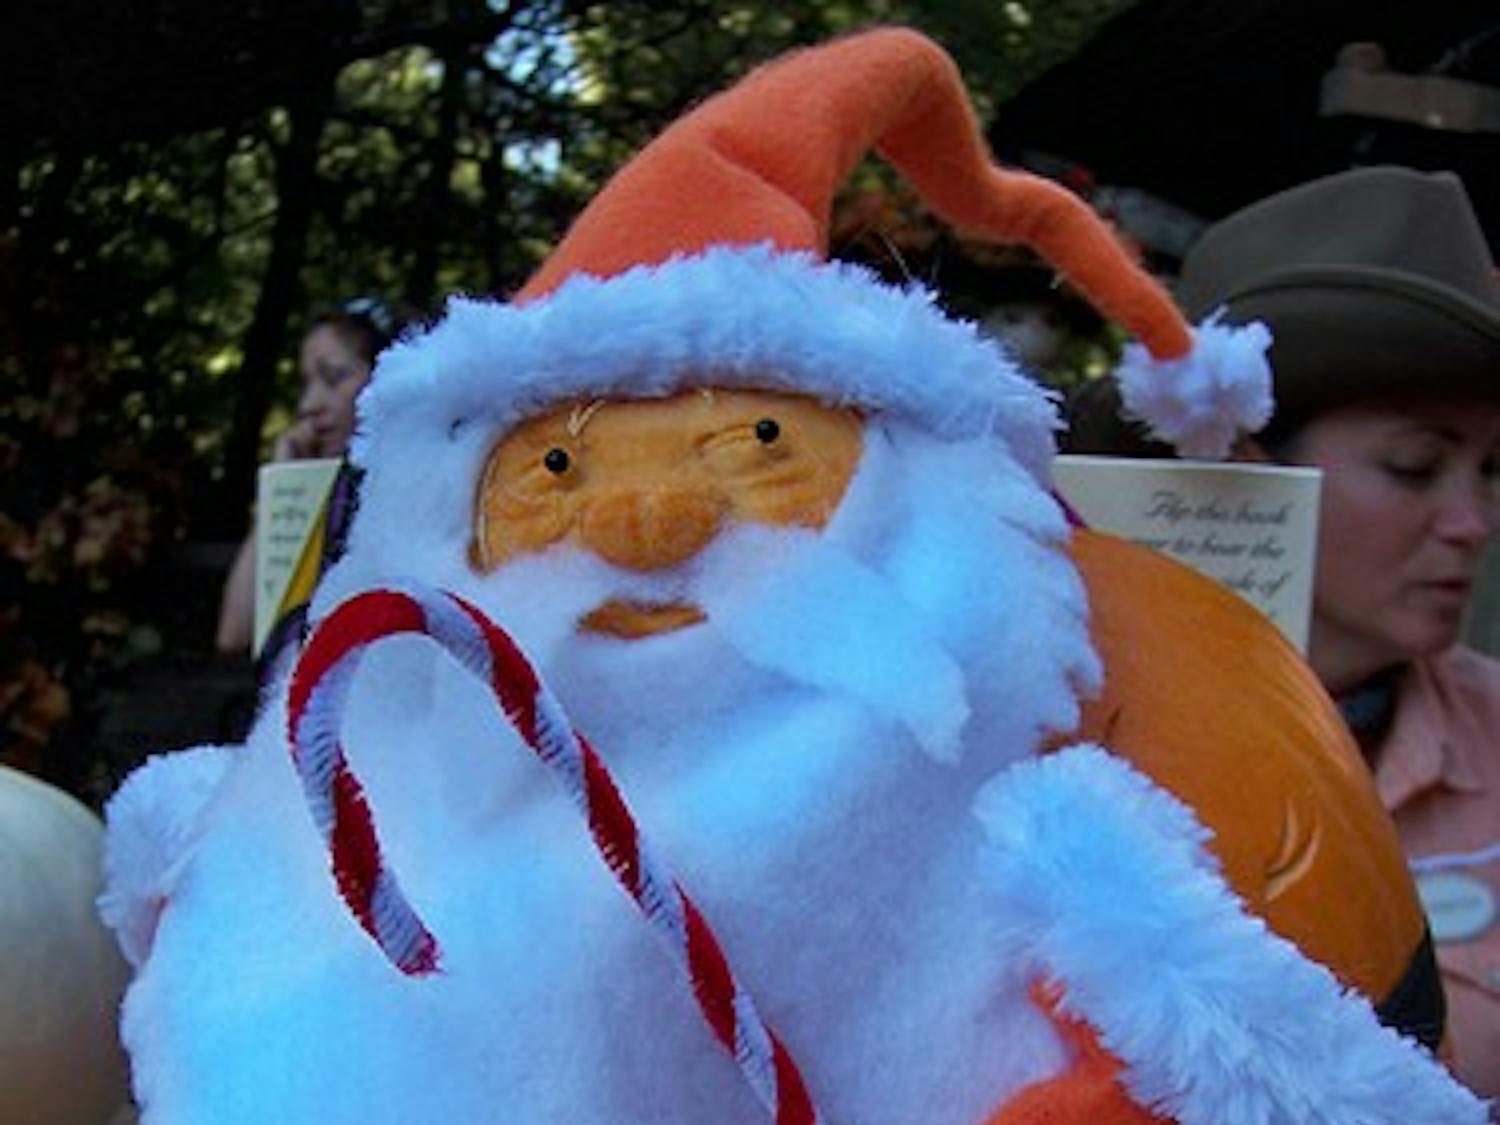 Santa Pumpkin - Loren Javier/flickr.com